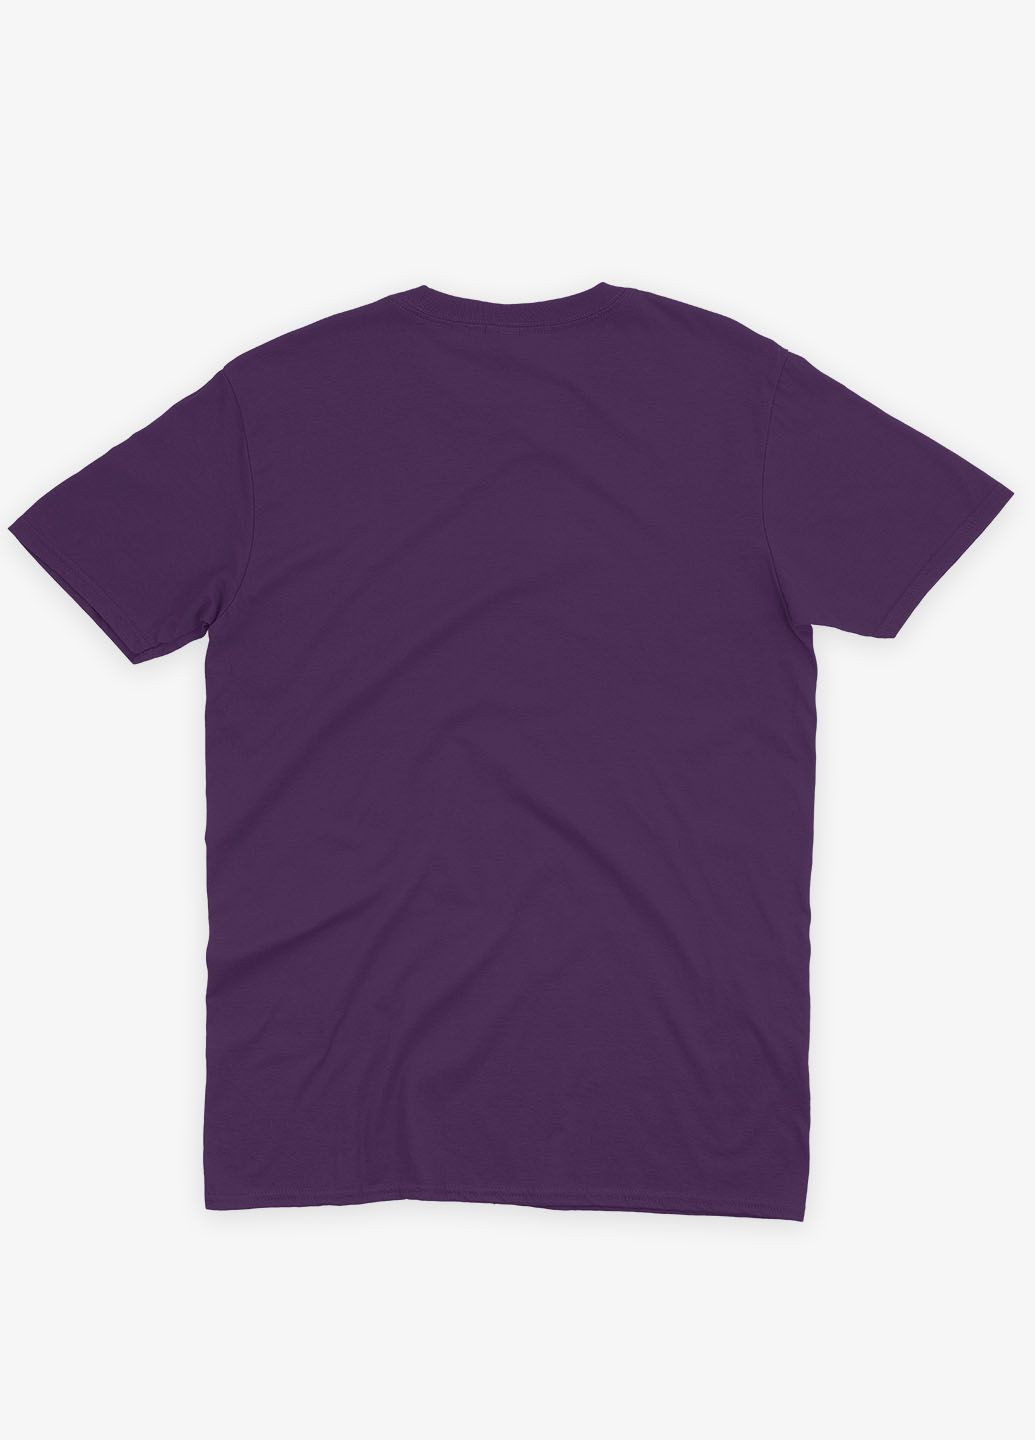 Фиолетовая демисезонная футболка для девочки с принтом супергероя - капитан америка (ts001-1-dby-006-022-009-g) Modno